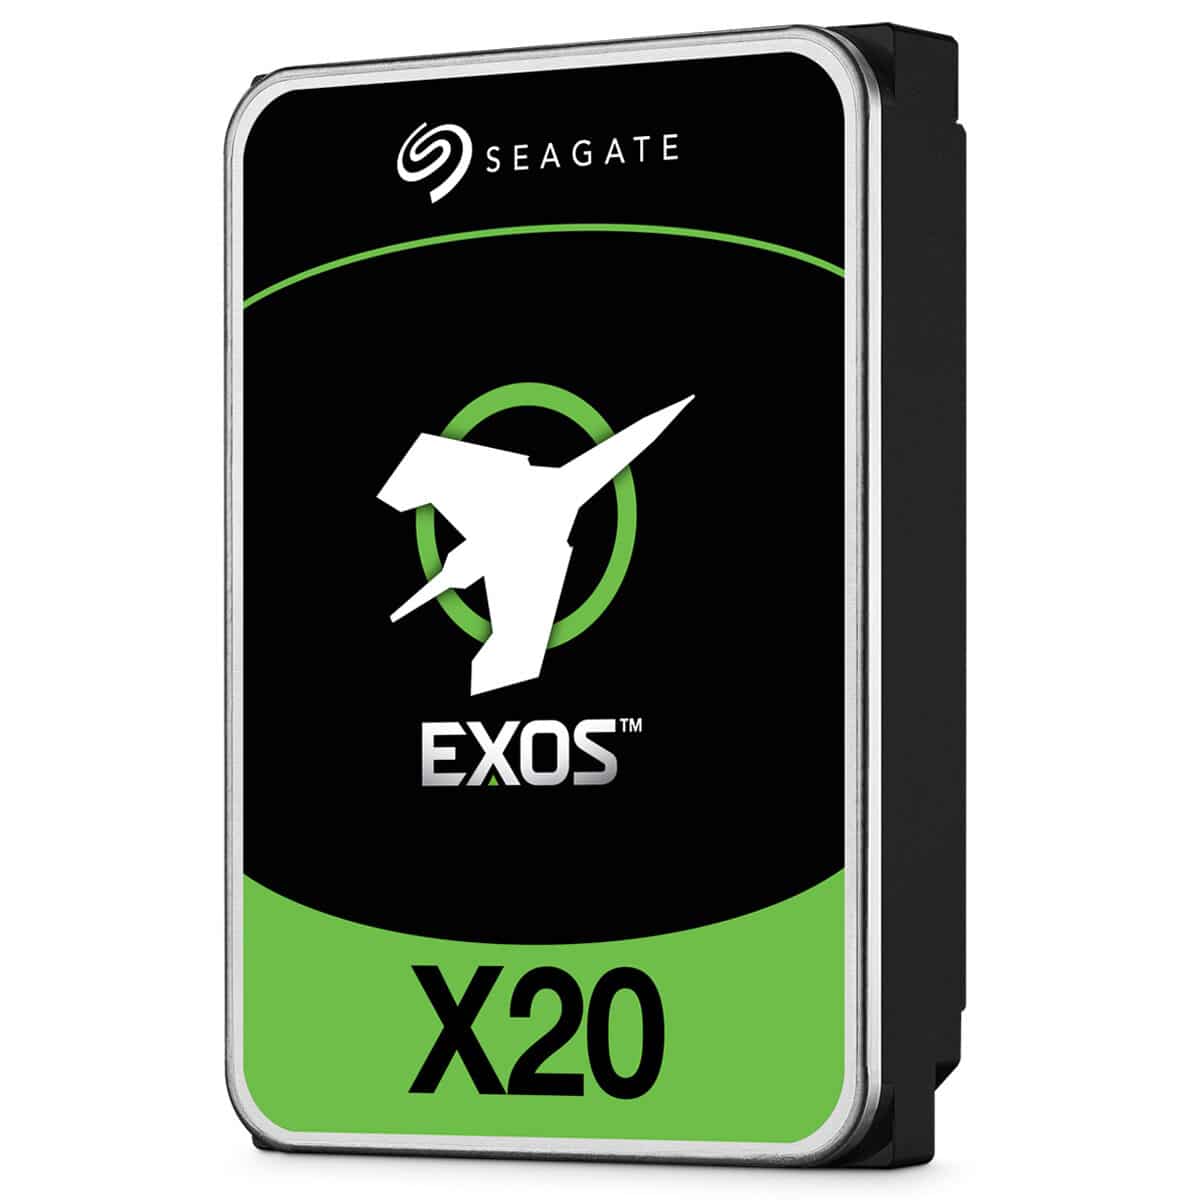 Seagate EXOS X20 Enterprise Hard Drive